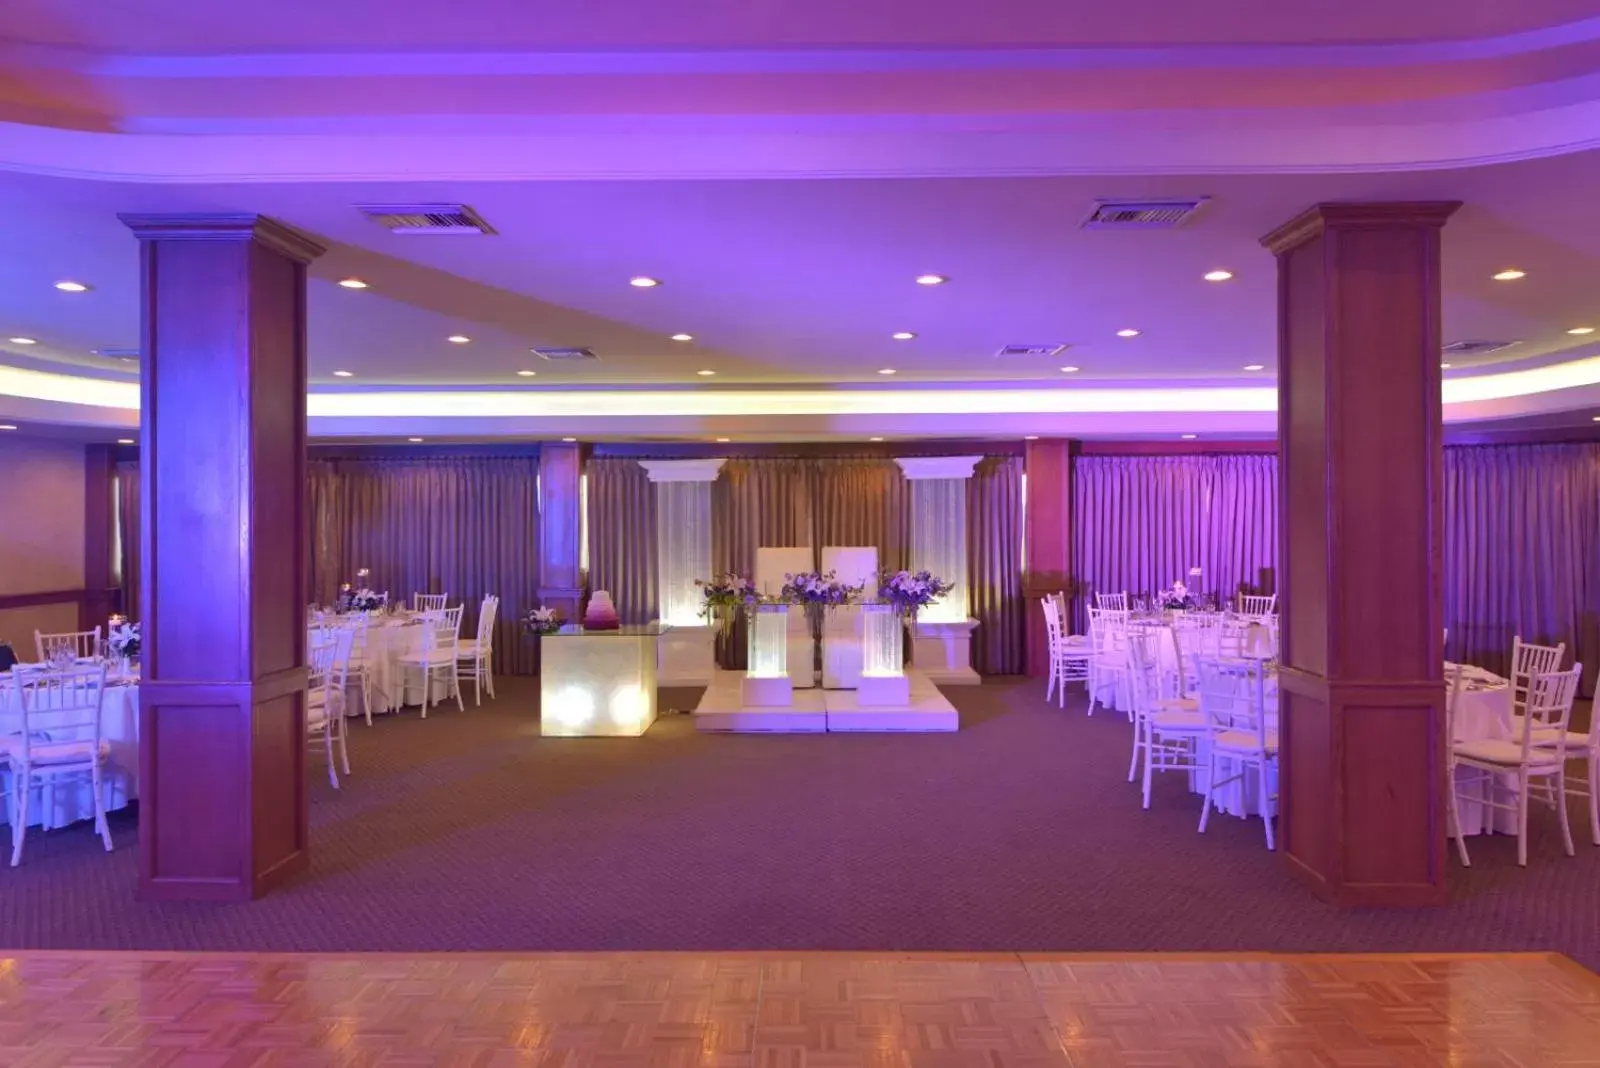 Banquet/Function facilities, Banquet Facilities in Fresno Galerias